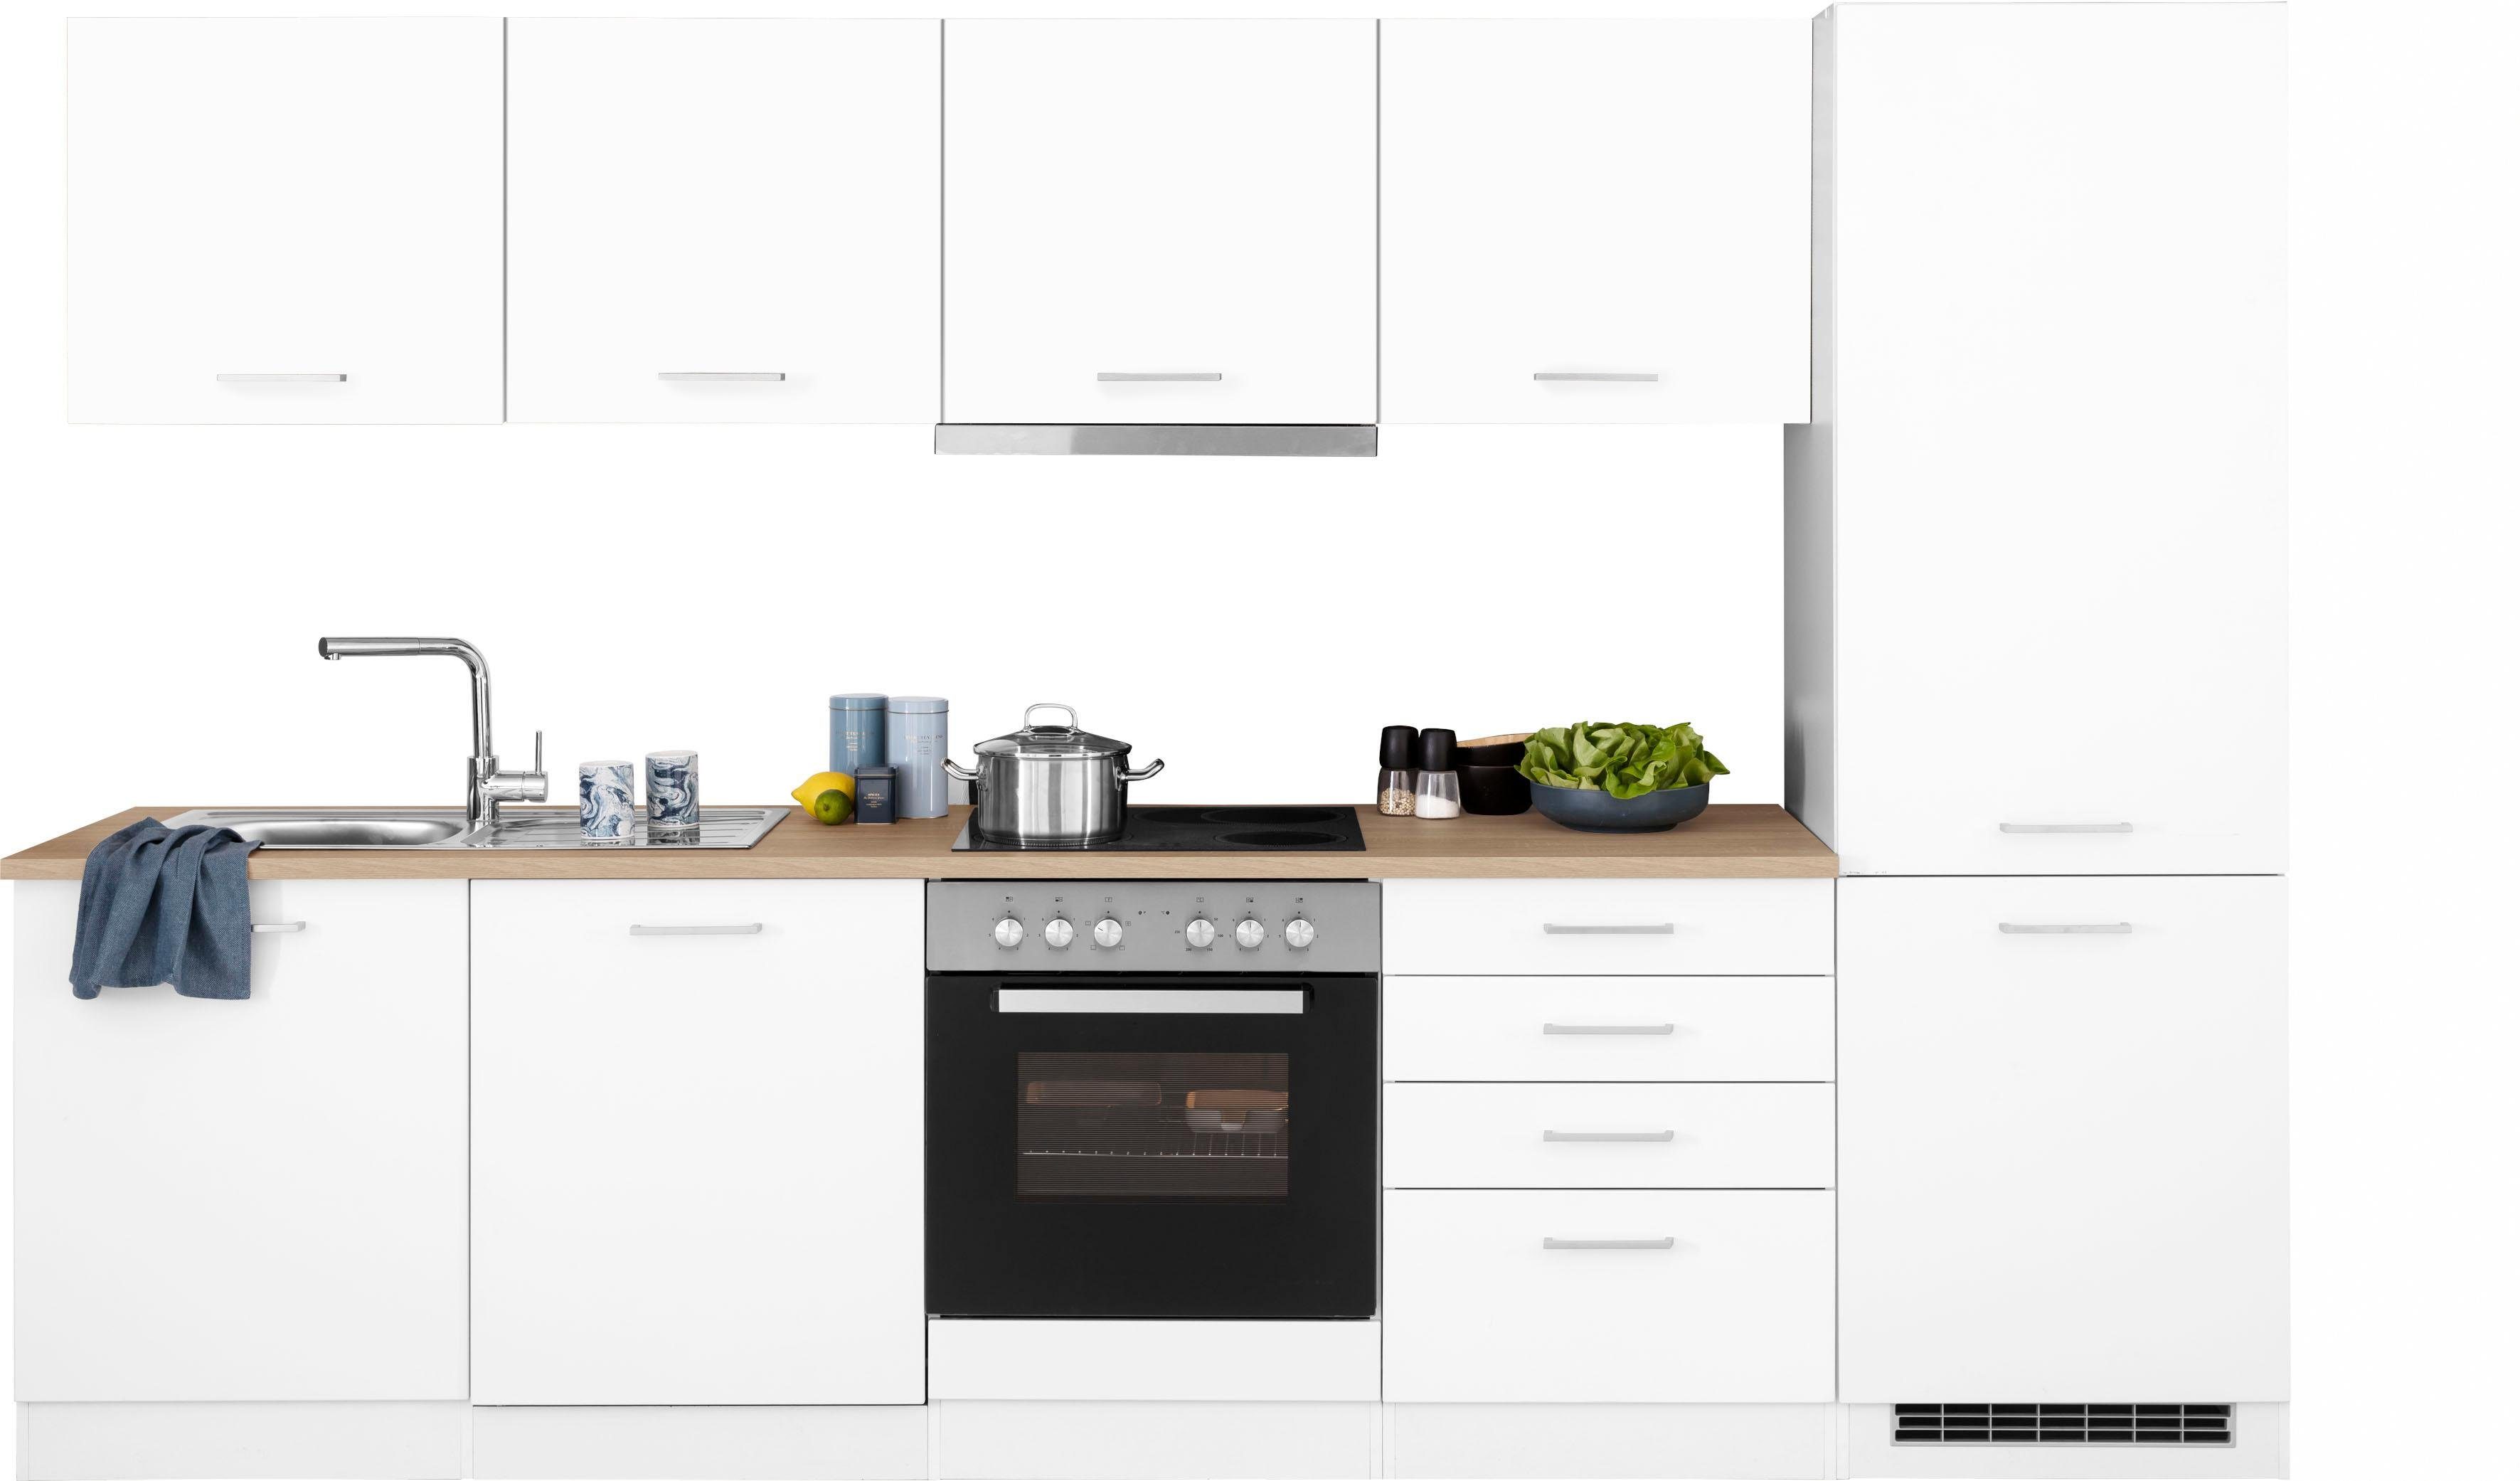 HELD MÖBEL Küchenzeile Visby, mit E-Geräte, 300 cm, inkl. Kühl/Gefrierkombination und Geschirrspüler